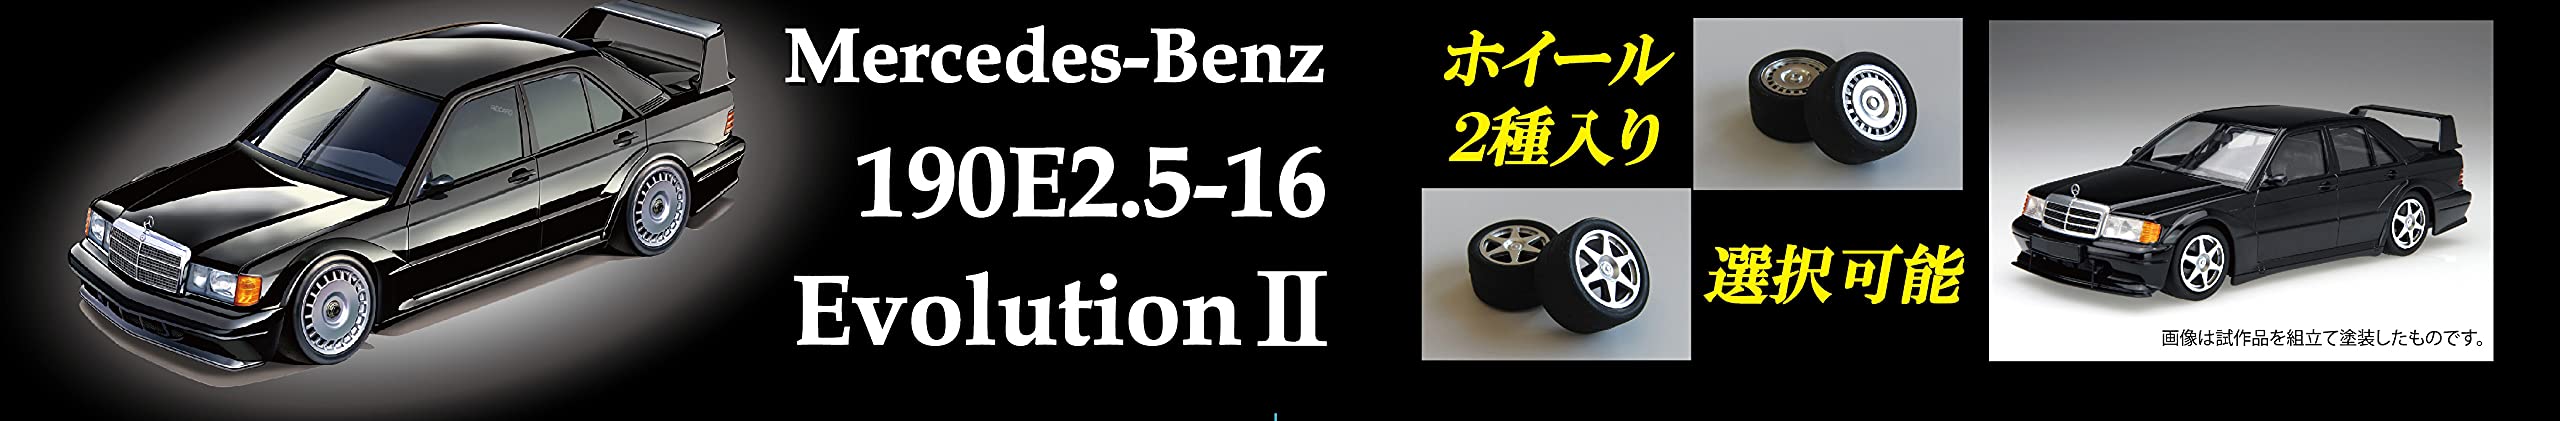 FUJIMI Real Sports Car 1/24 Mercedes-Benz 190E2.5-16 Evolution Ll Modèle en plastique